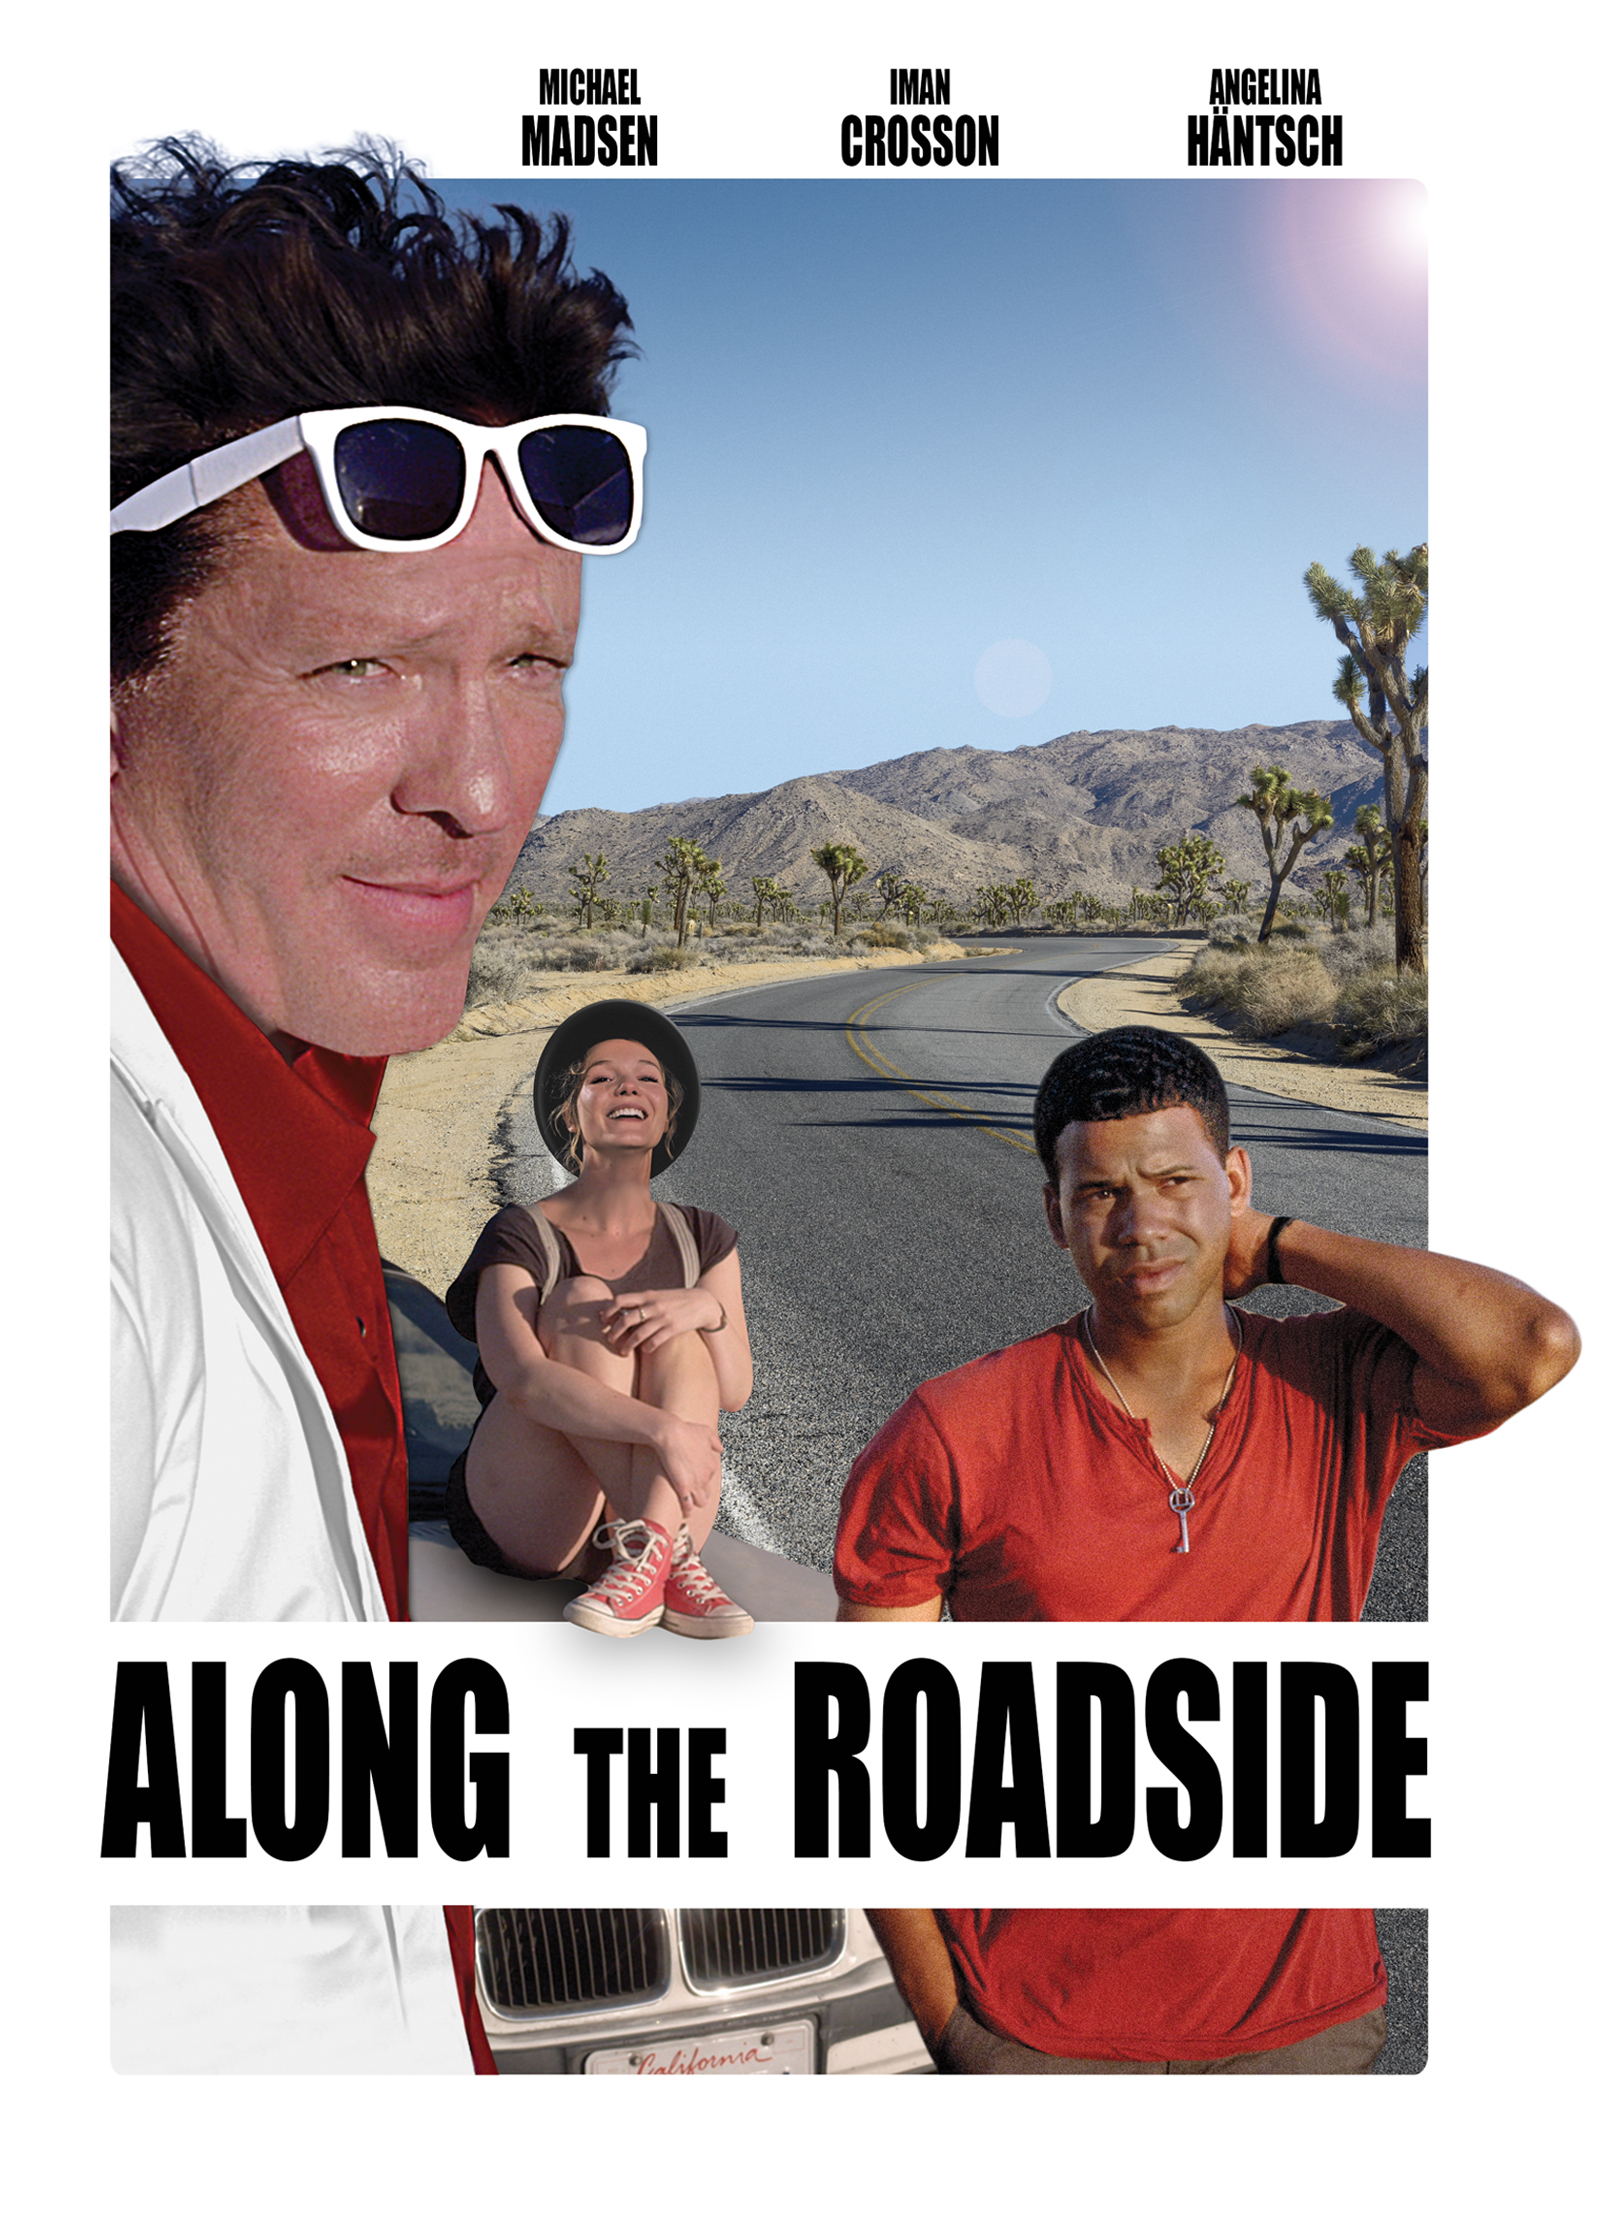 Michael Madsen in Along the Roadside (2013)